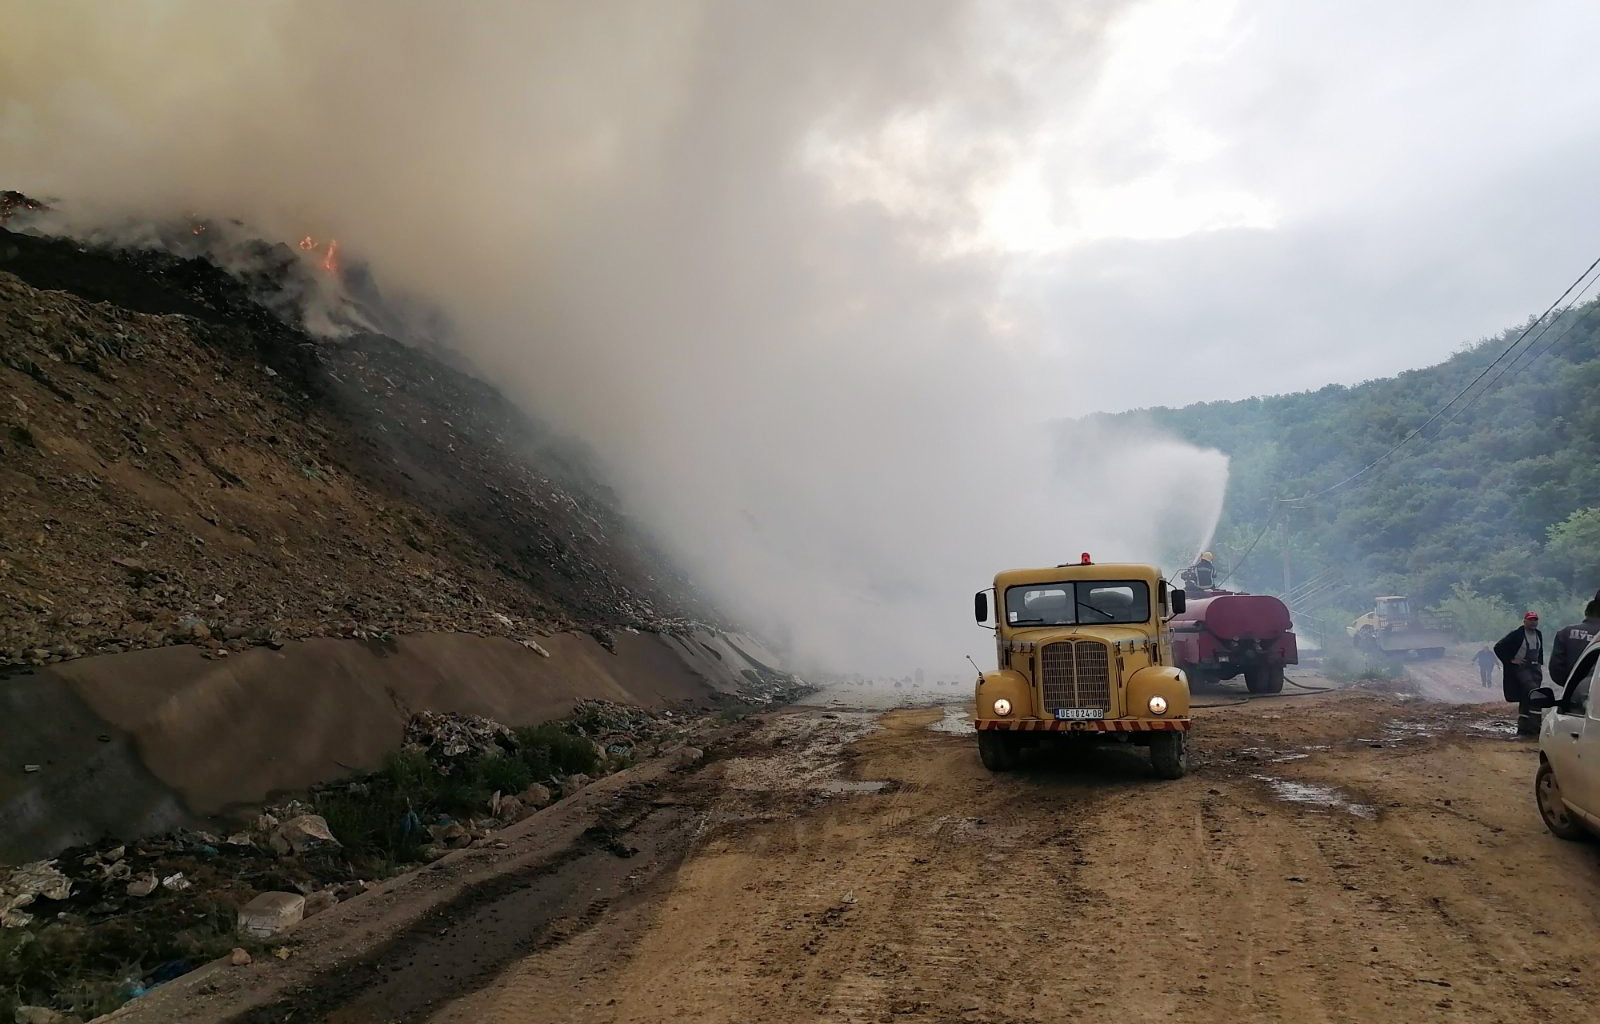 Dva helikoptera MUP-a upućena u Užice i pomažu u saniranju požara na deponiji „Duboko“